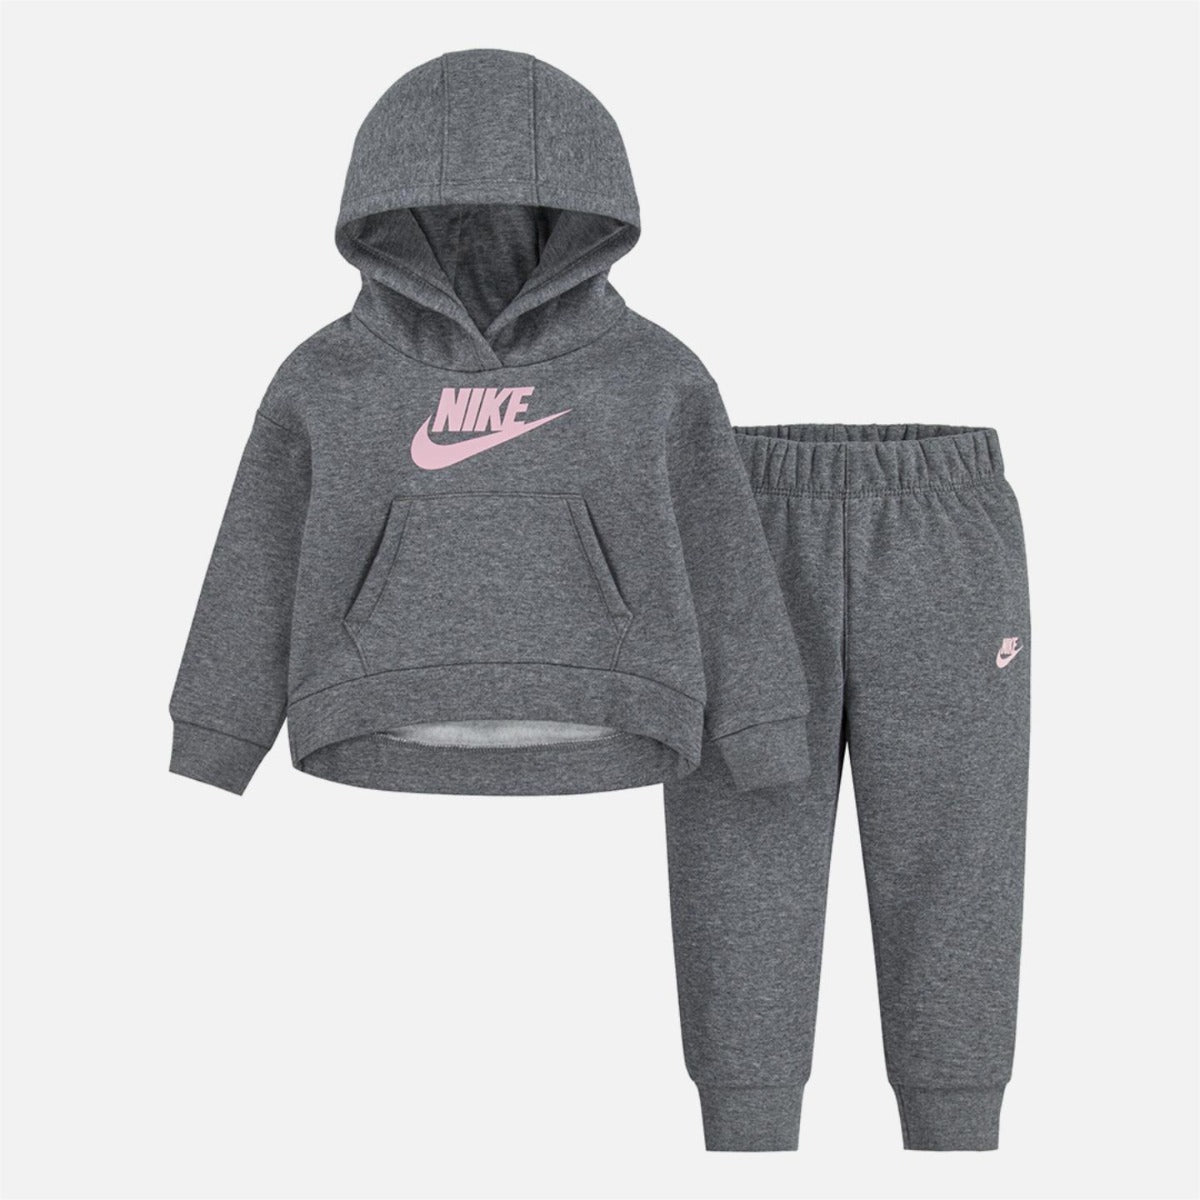 Set tuta neonato Nike - grigio/rosa